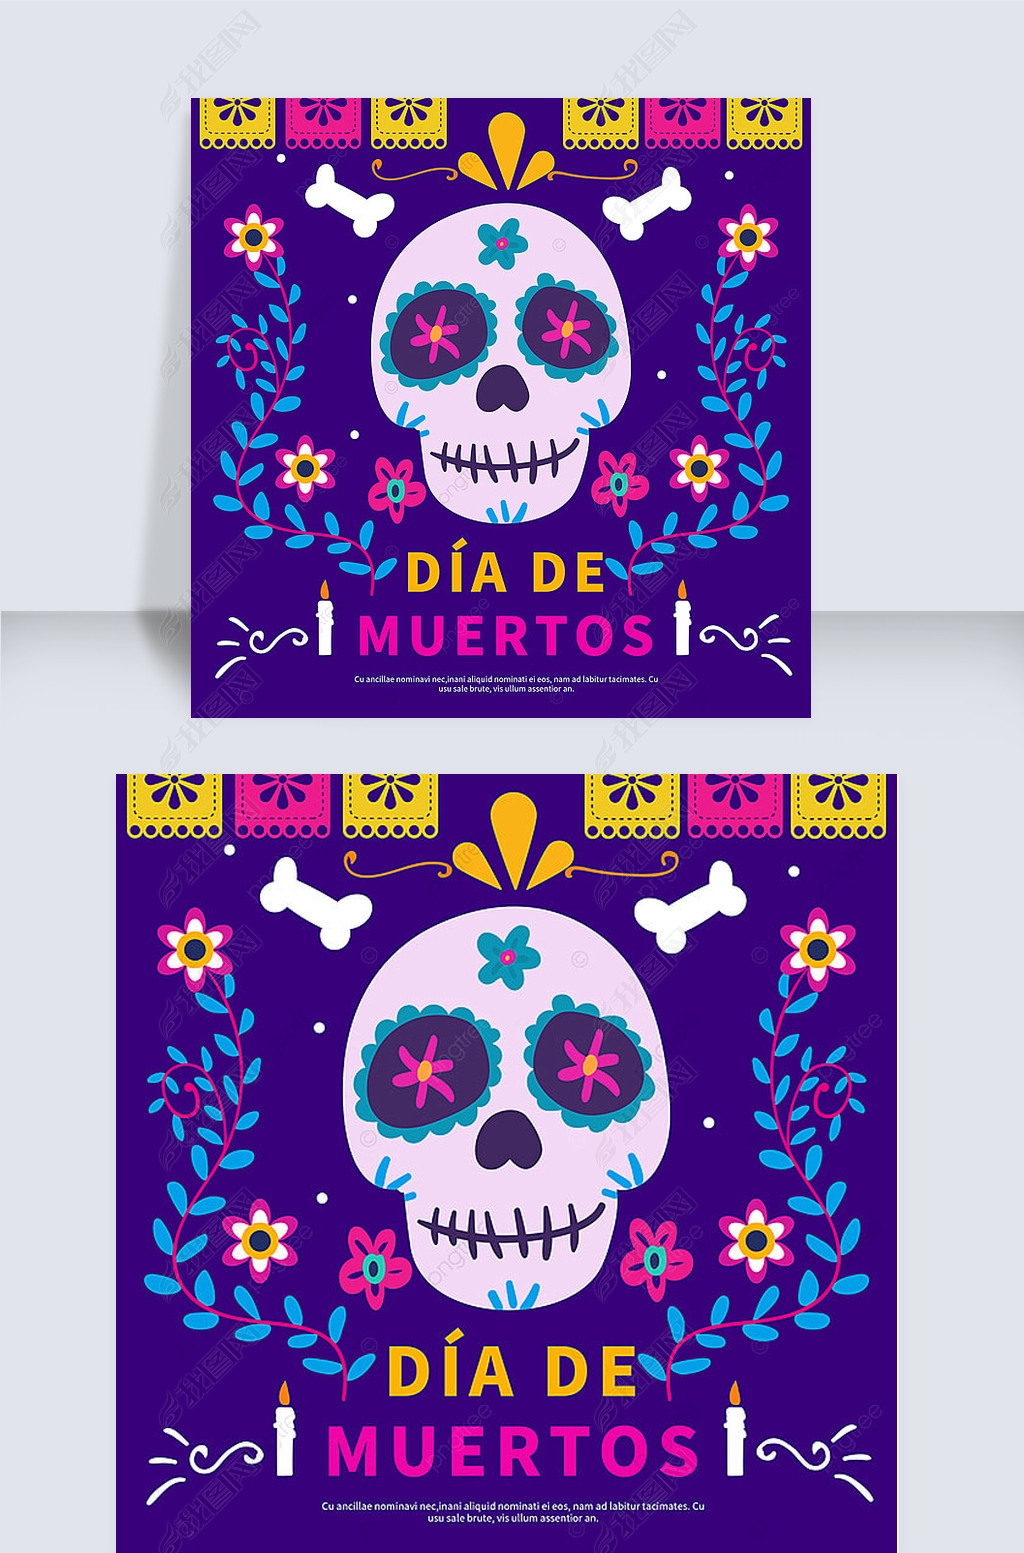 pattern skull mexico day of the dead social media